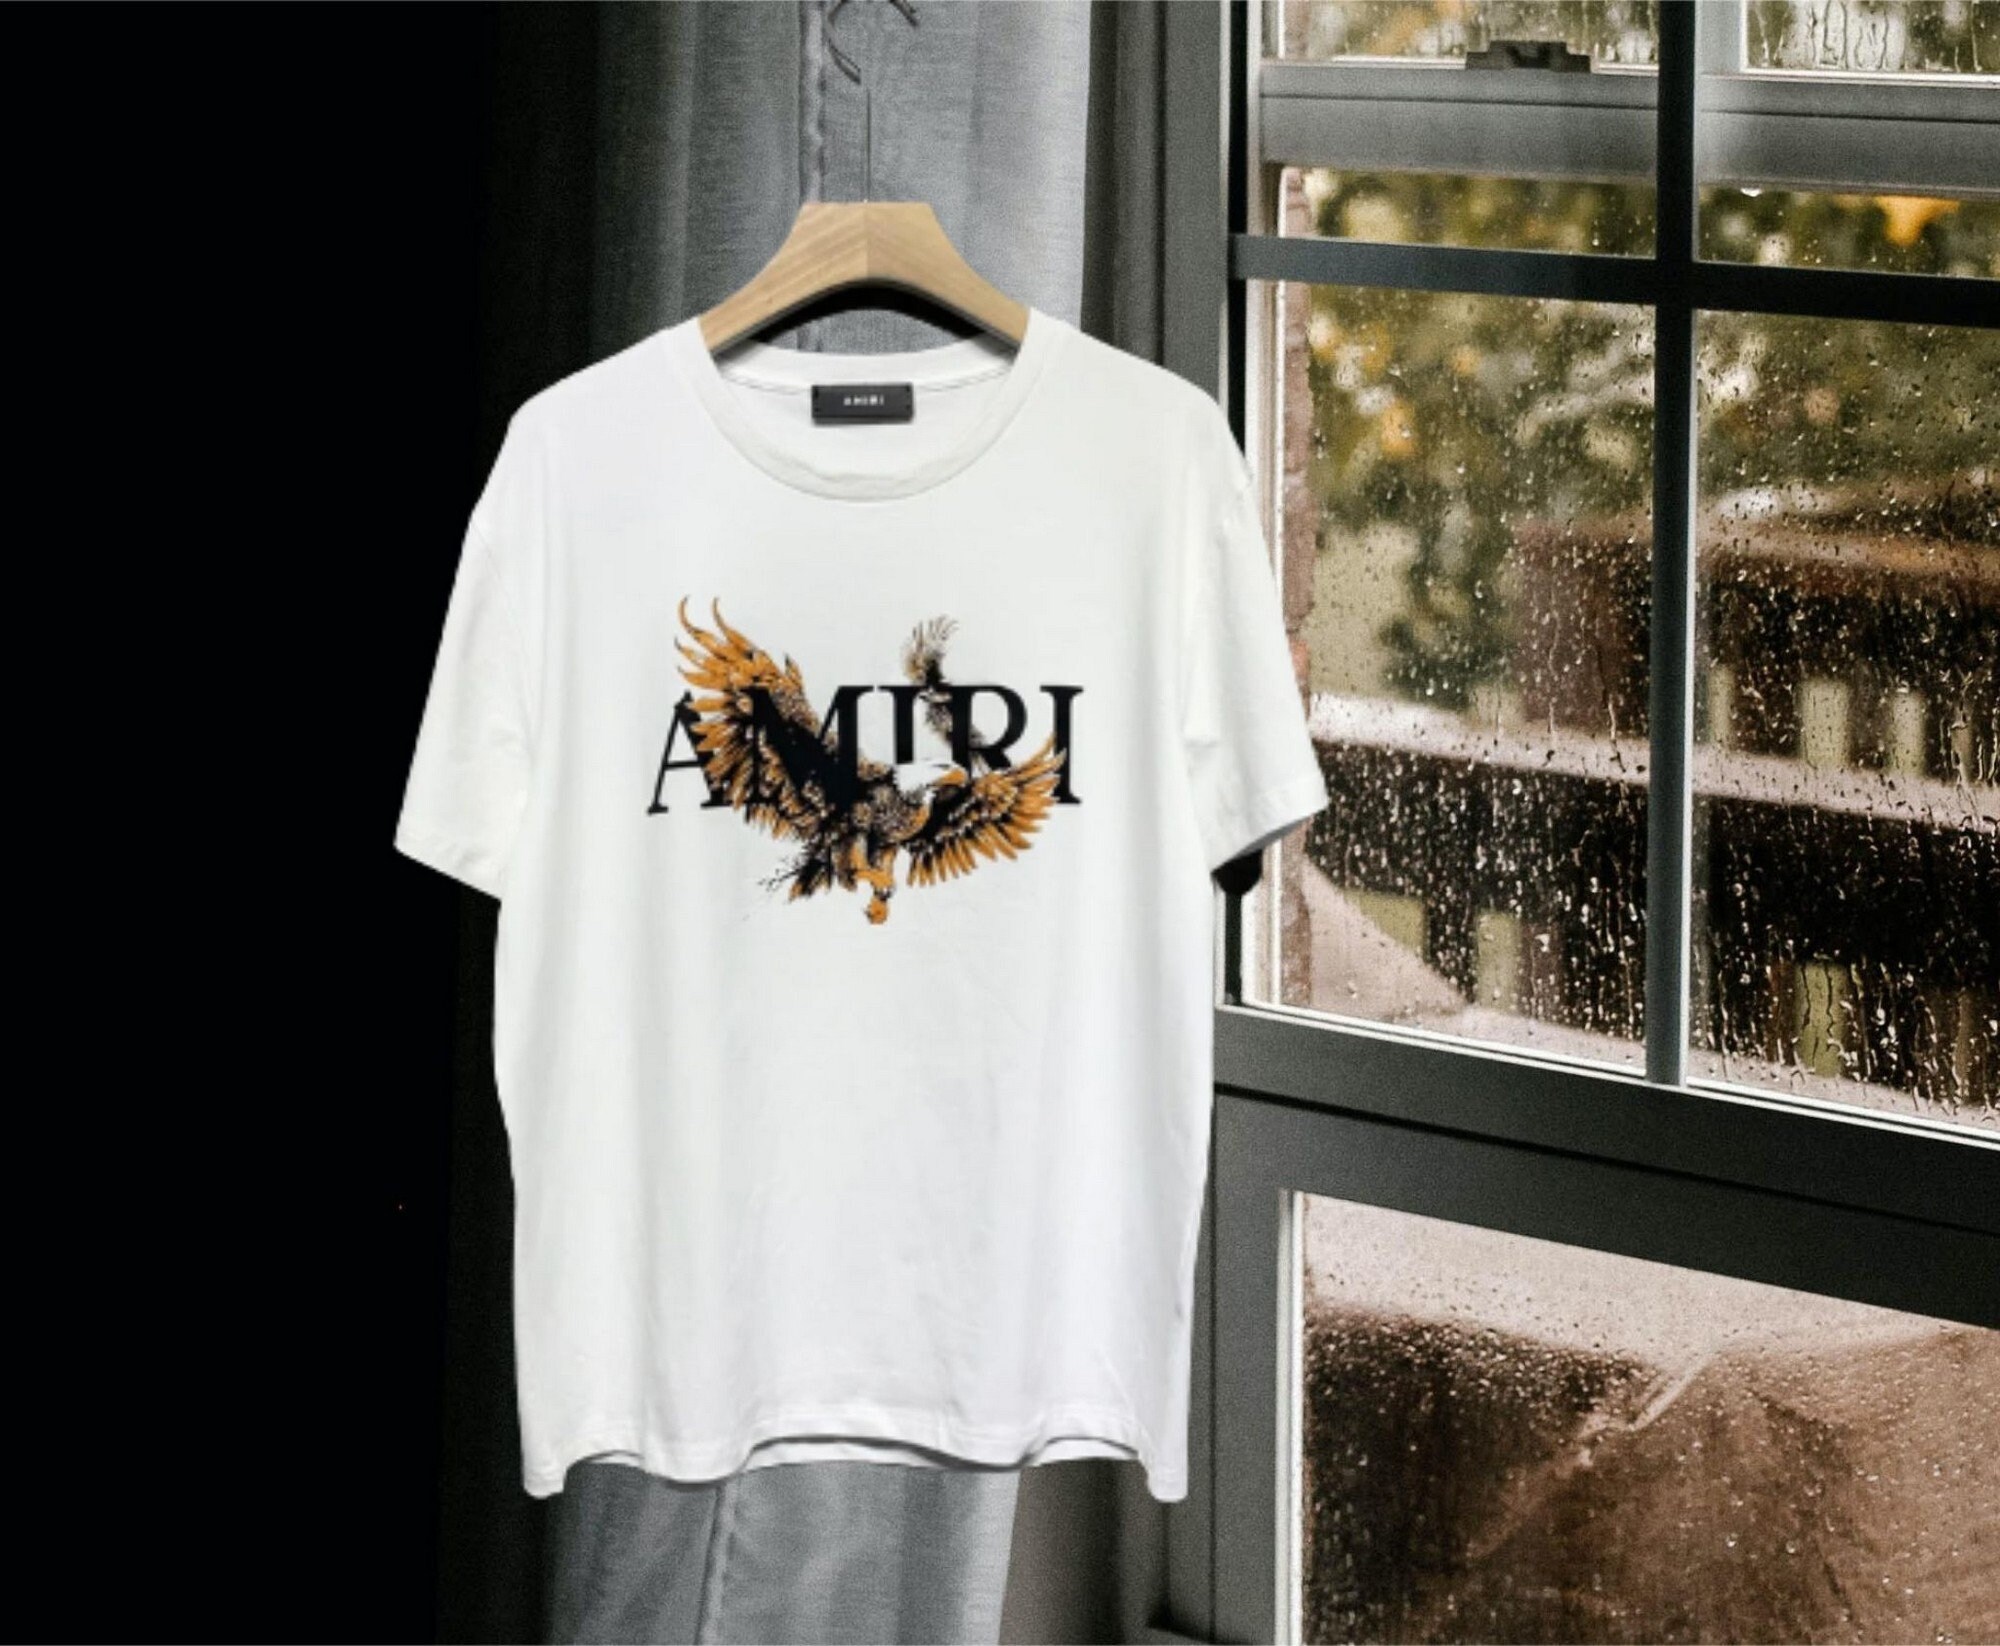 Amiri Logo T-shirt